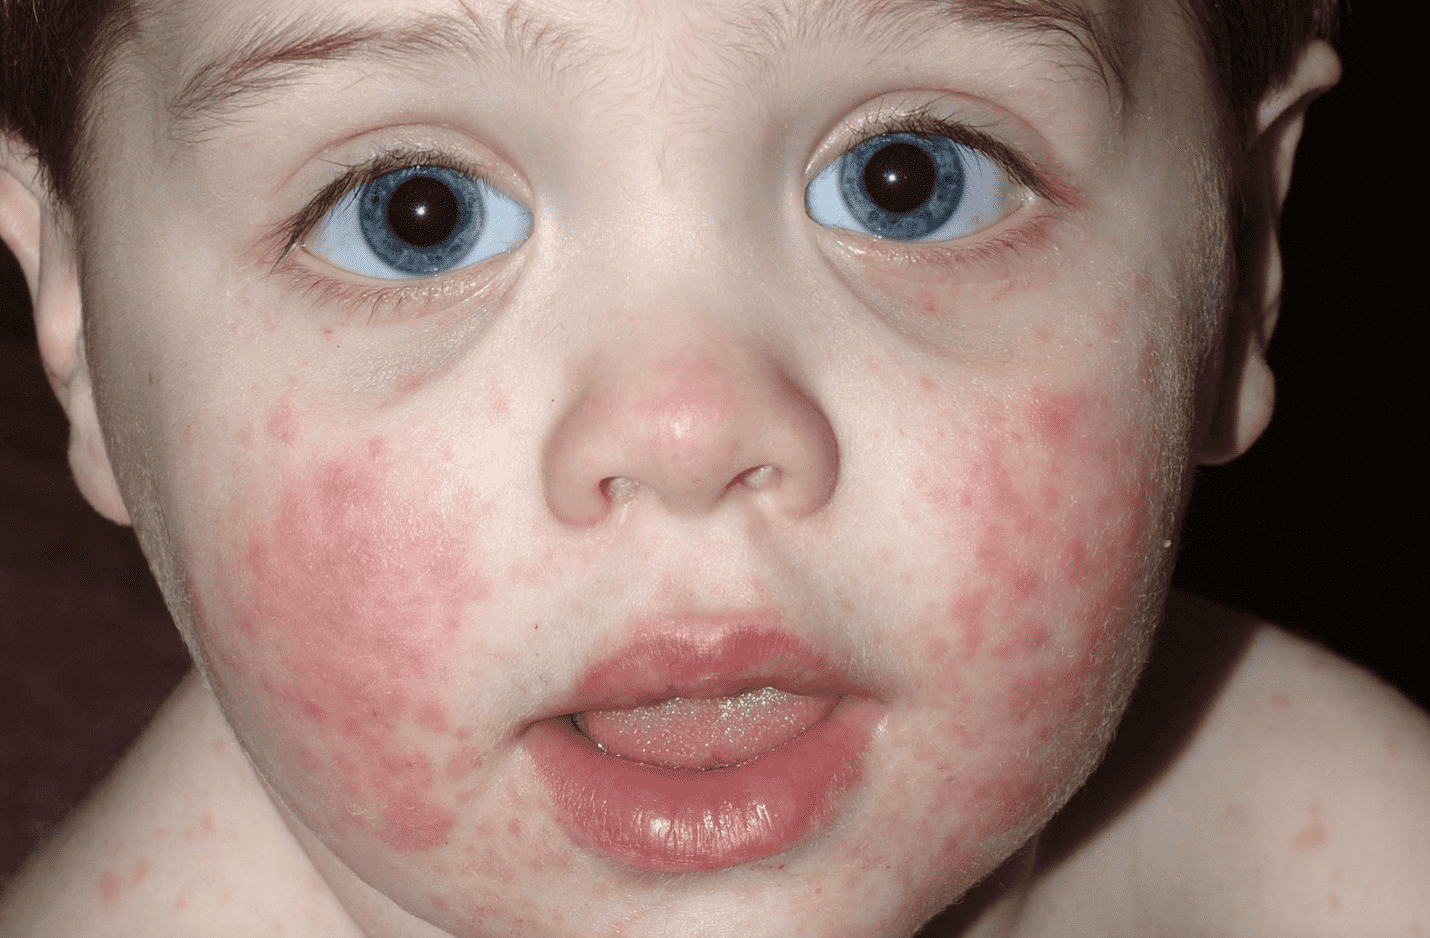  الطفح الجلدي عند الاطفال  | 5 أنواع يصاحبها ارتفاع في درجة الحرارة - بالصور - مرض الخد الصفعي - مرض اليد والقدم والفم - الطفح الوردي - الحمى القرمزية - الحصبة